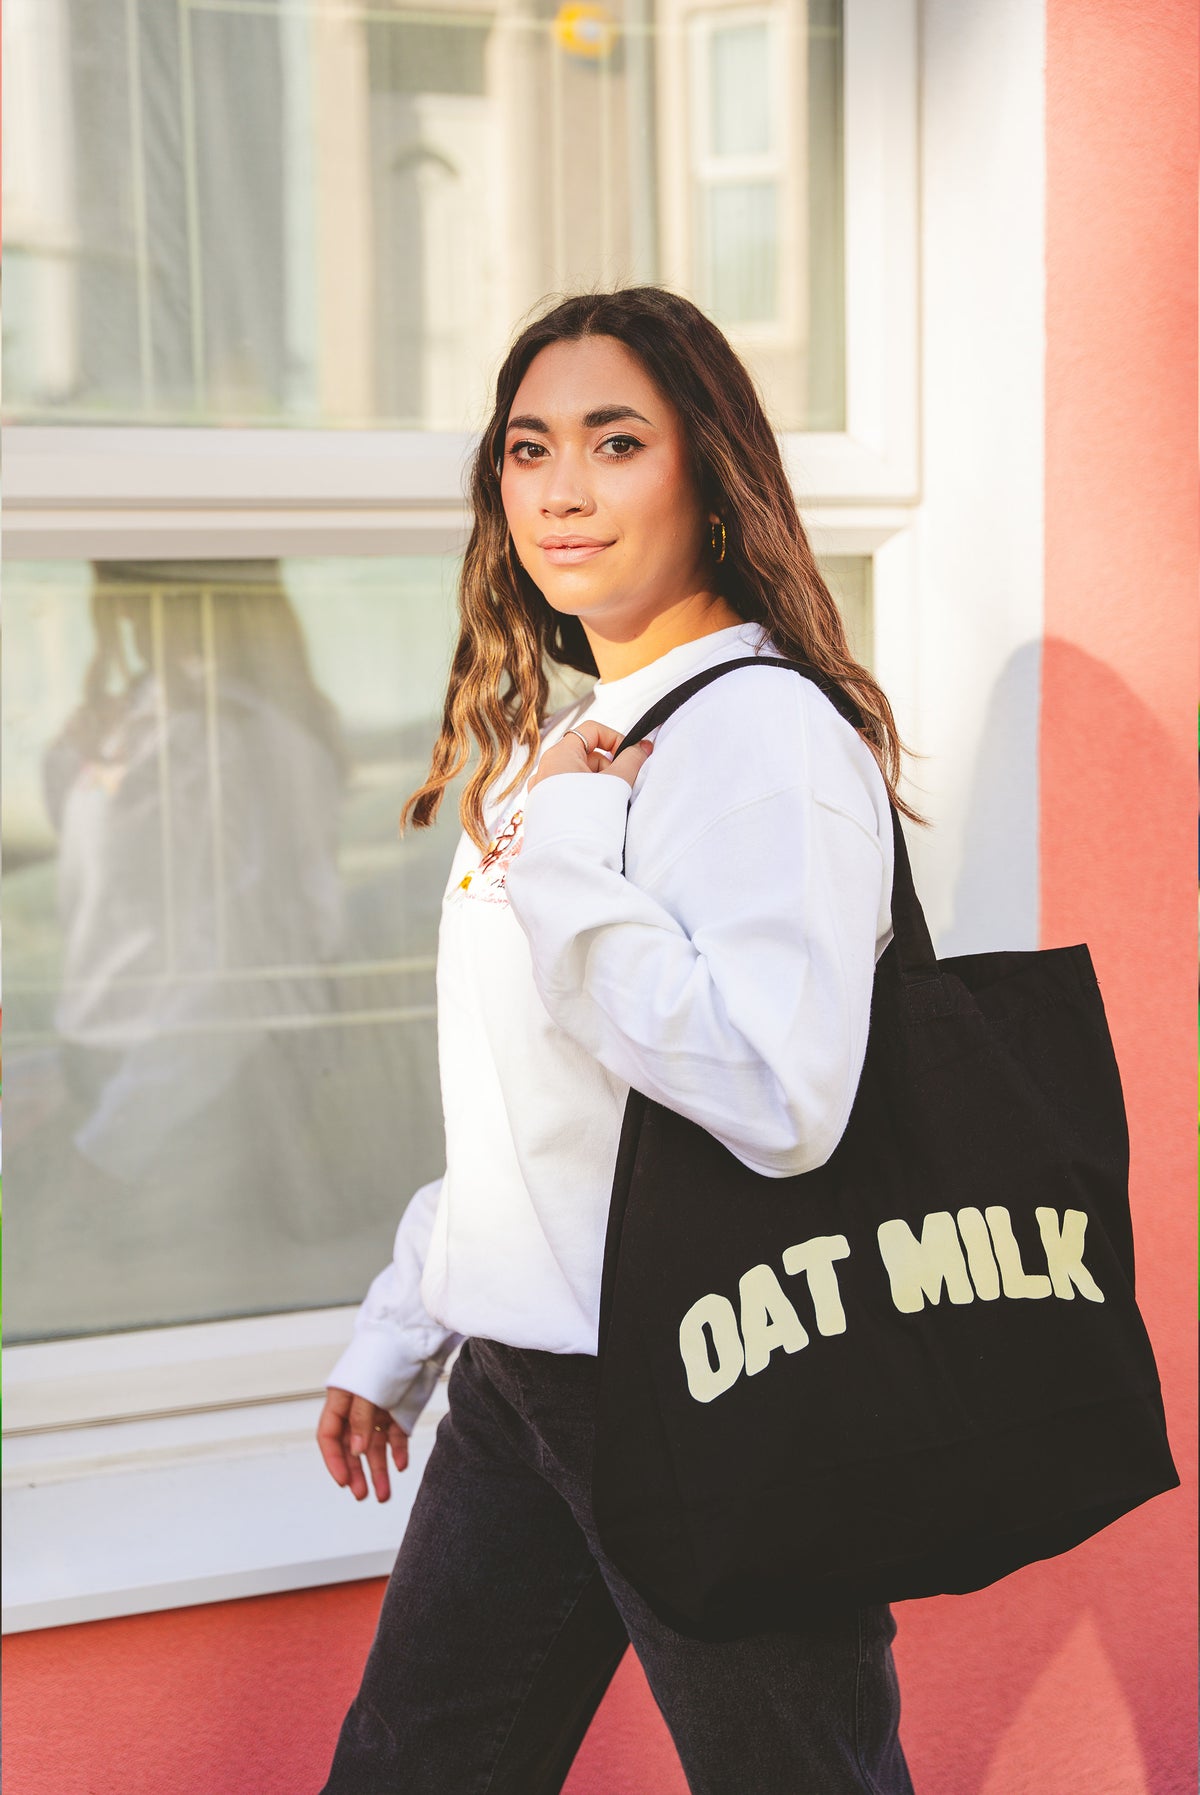 The Oat Milk Maxi Tote Bag